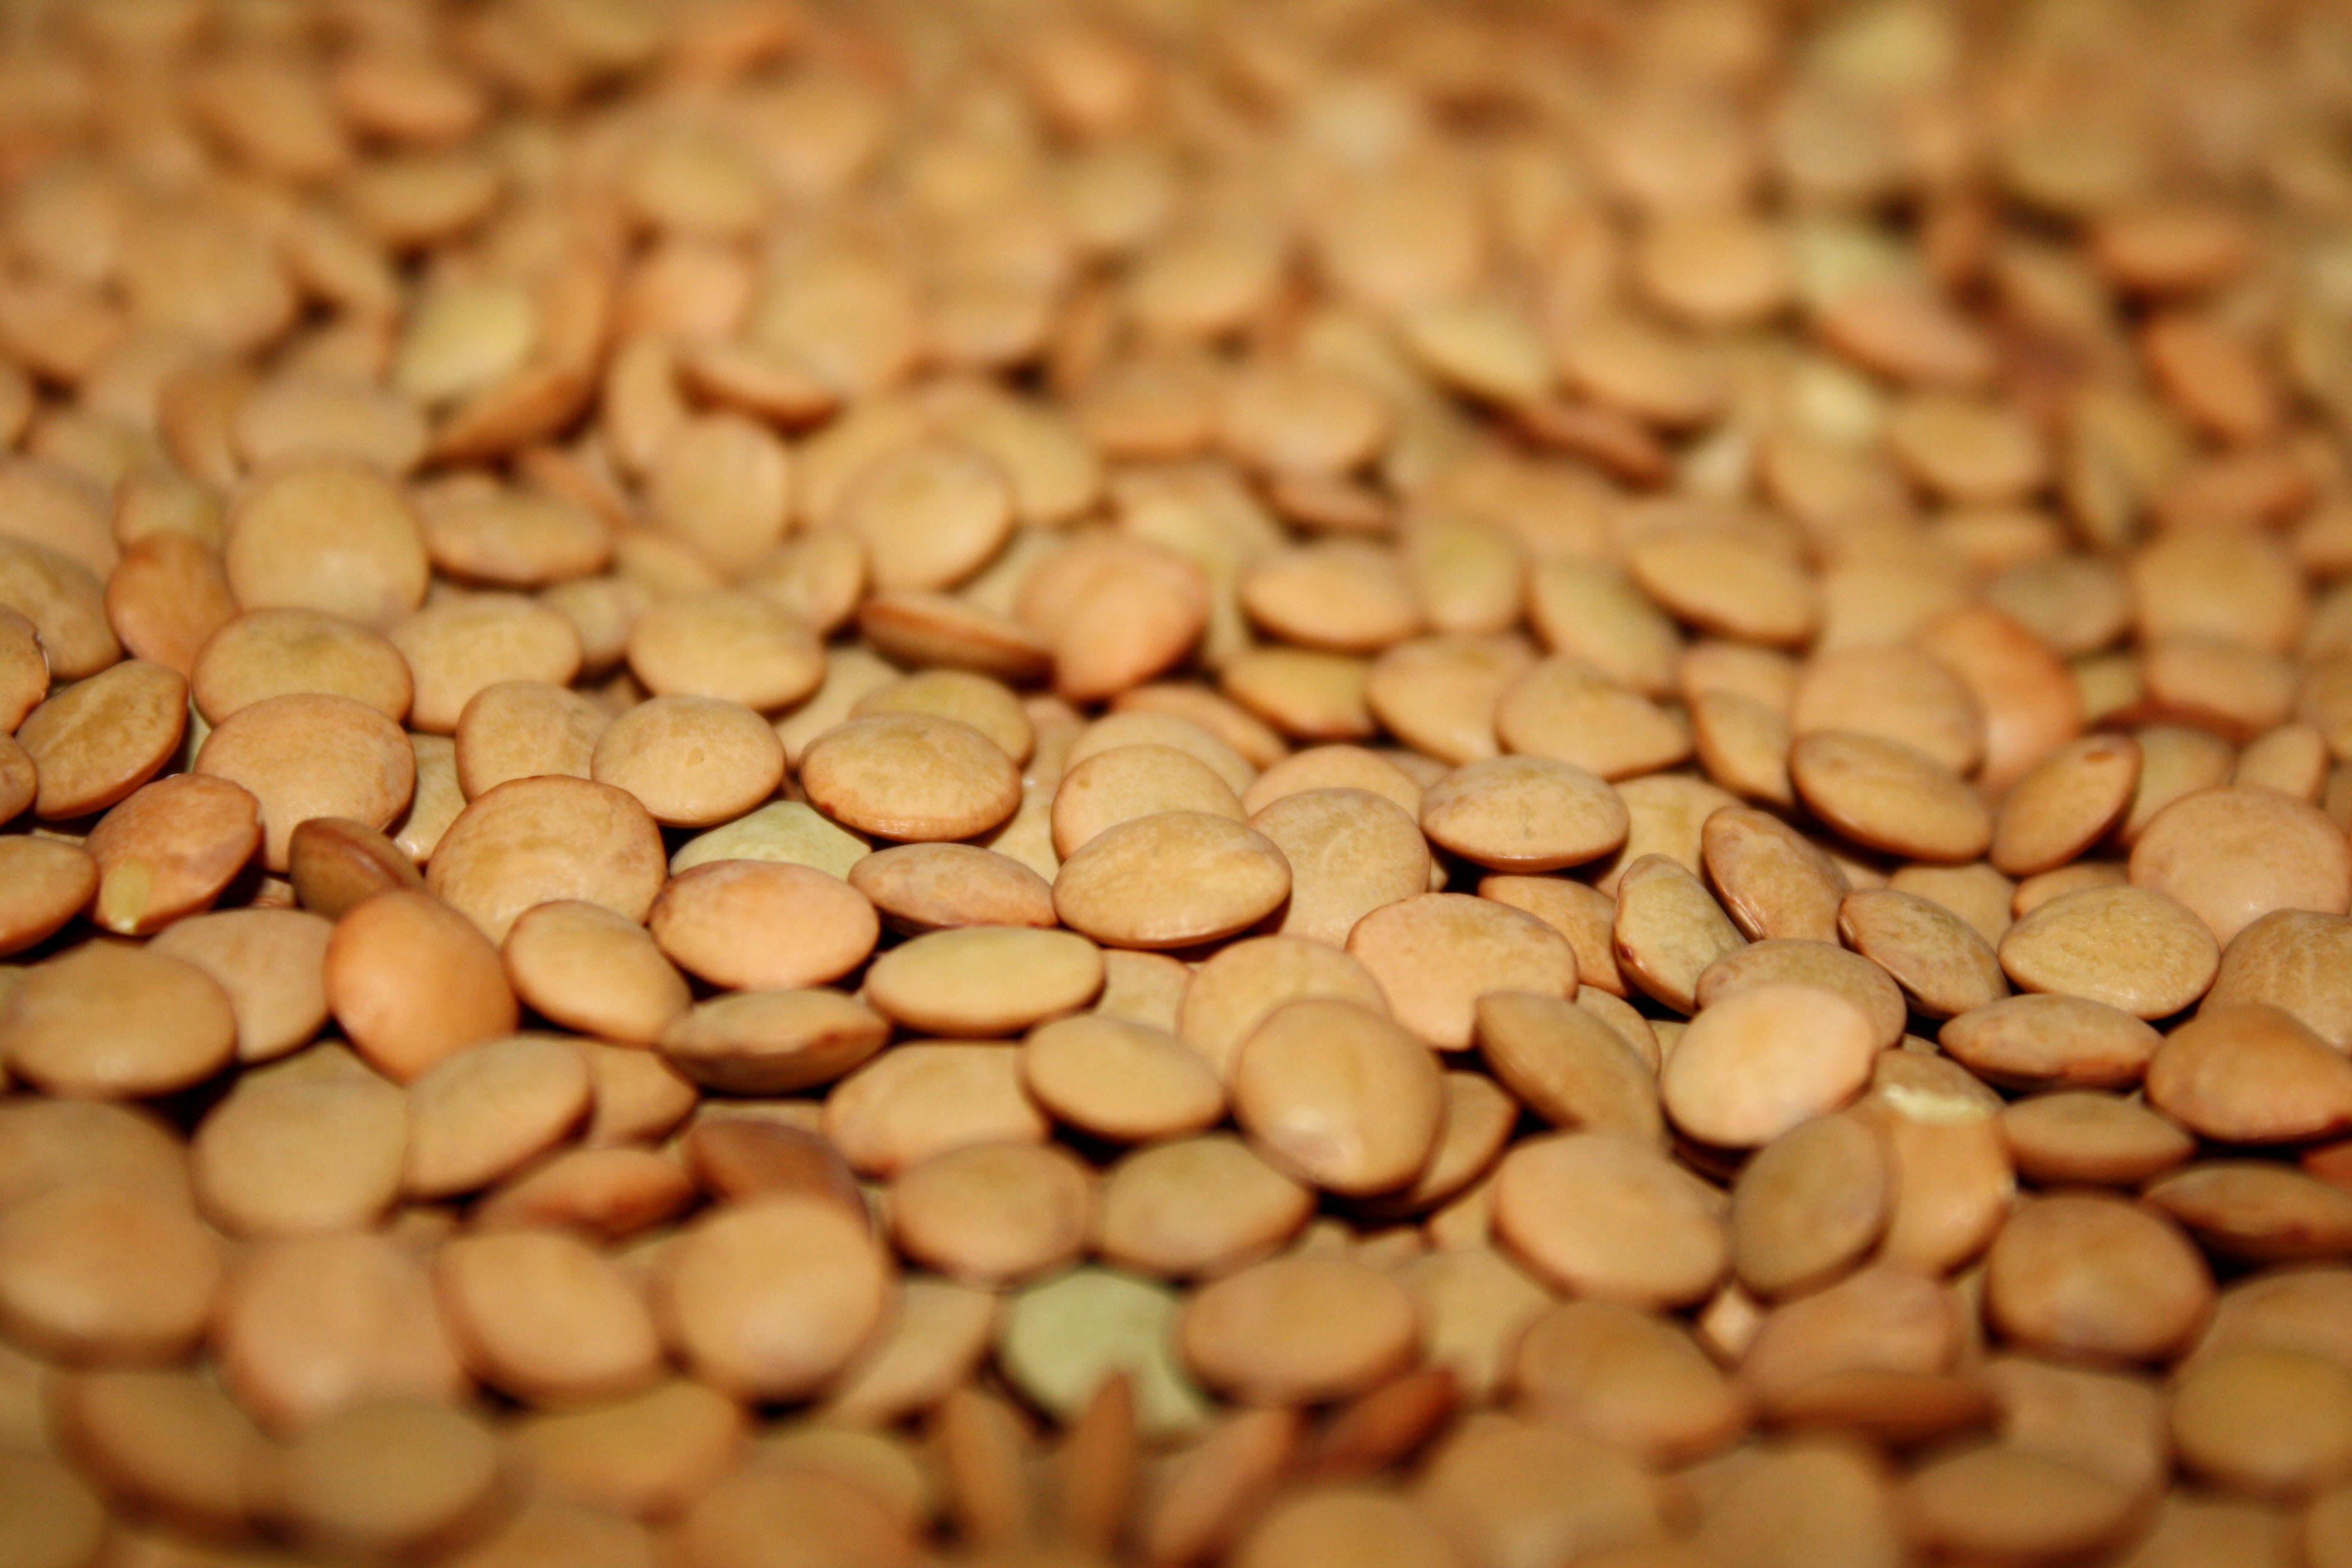 Picture free photograph photos. Beans clipart lentils